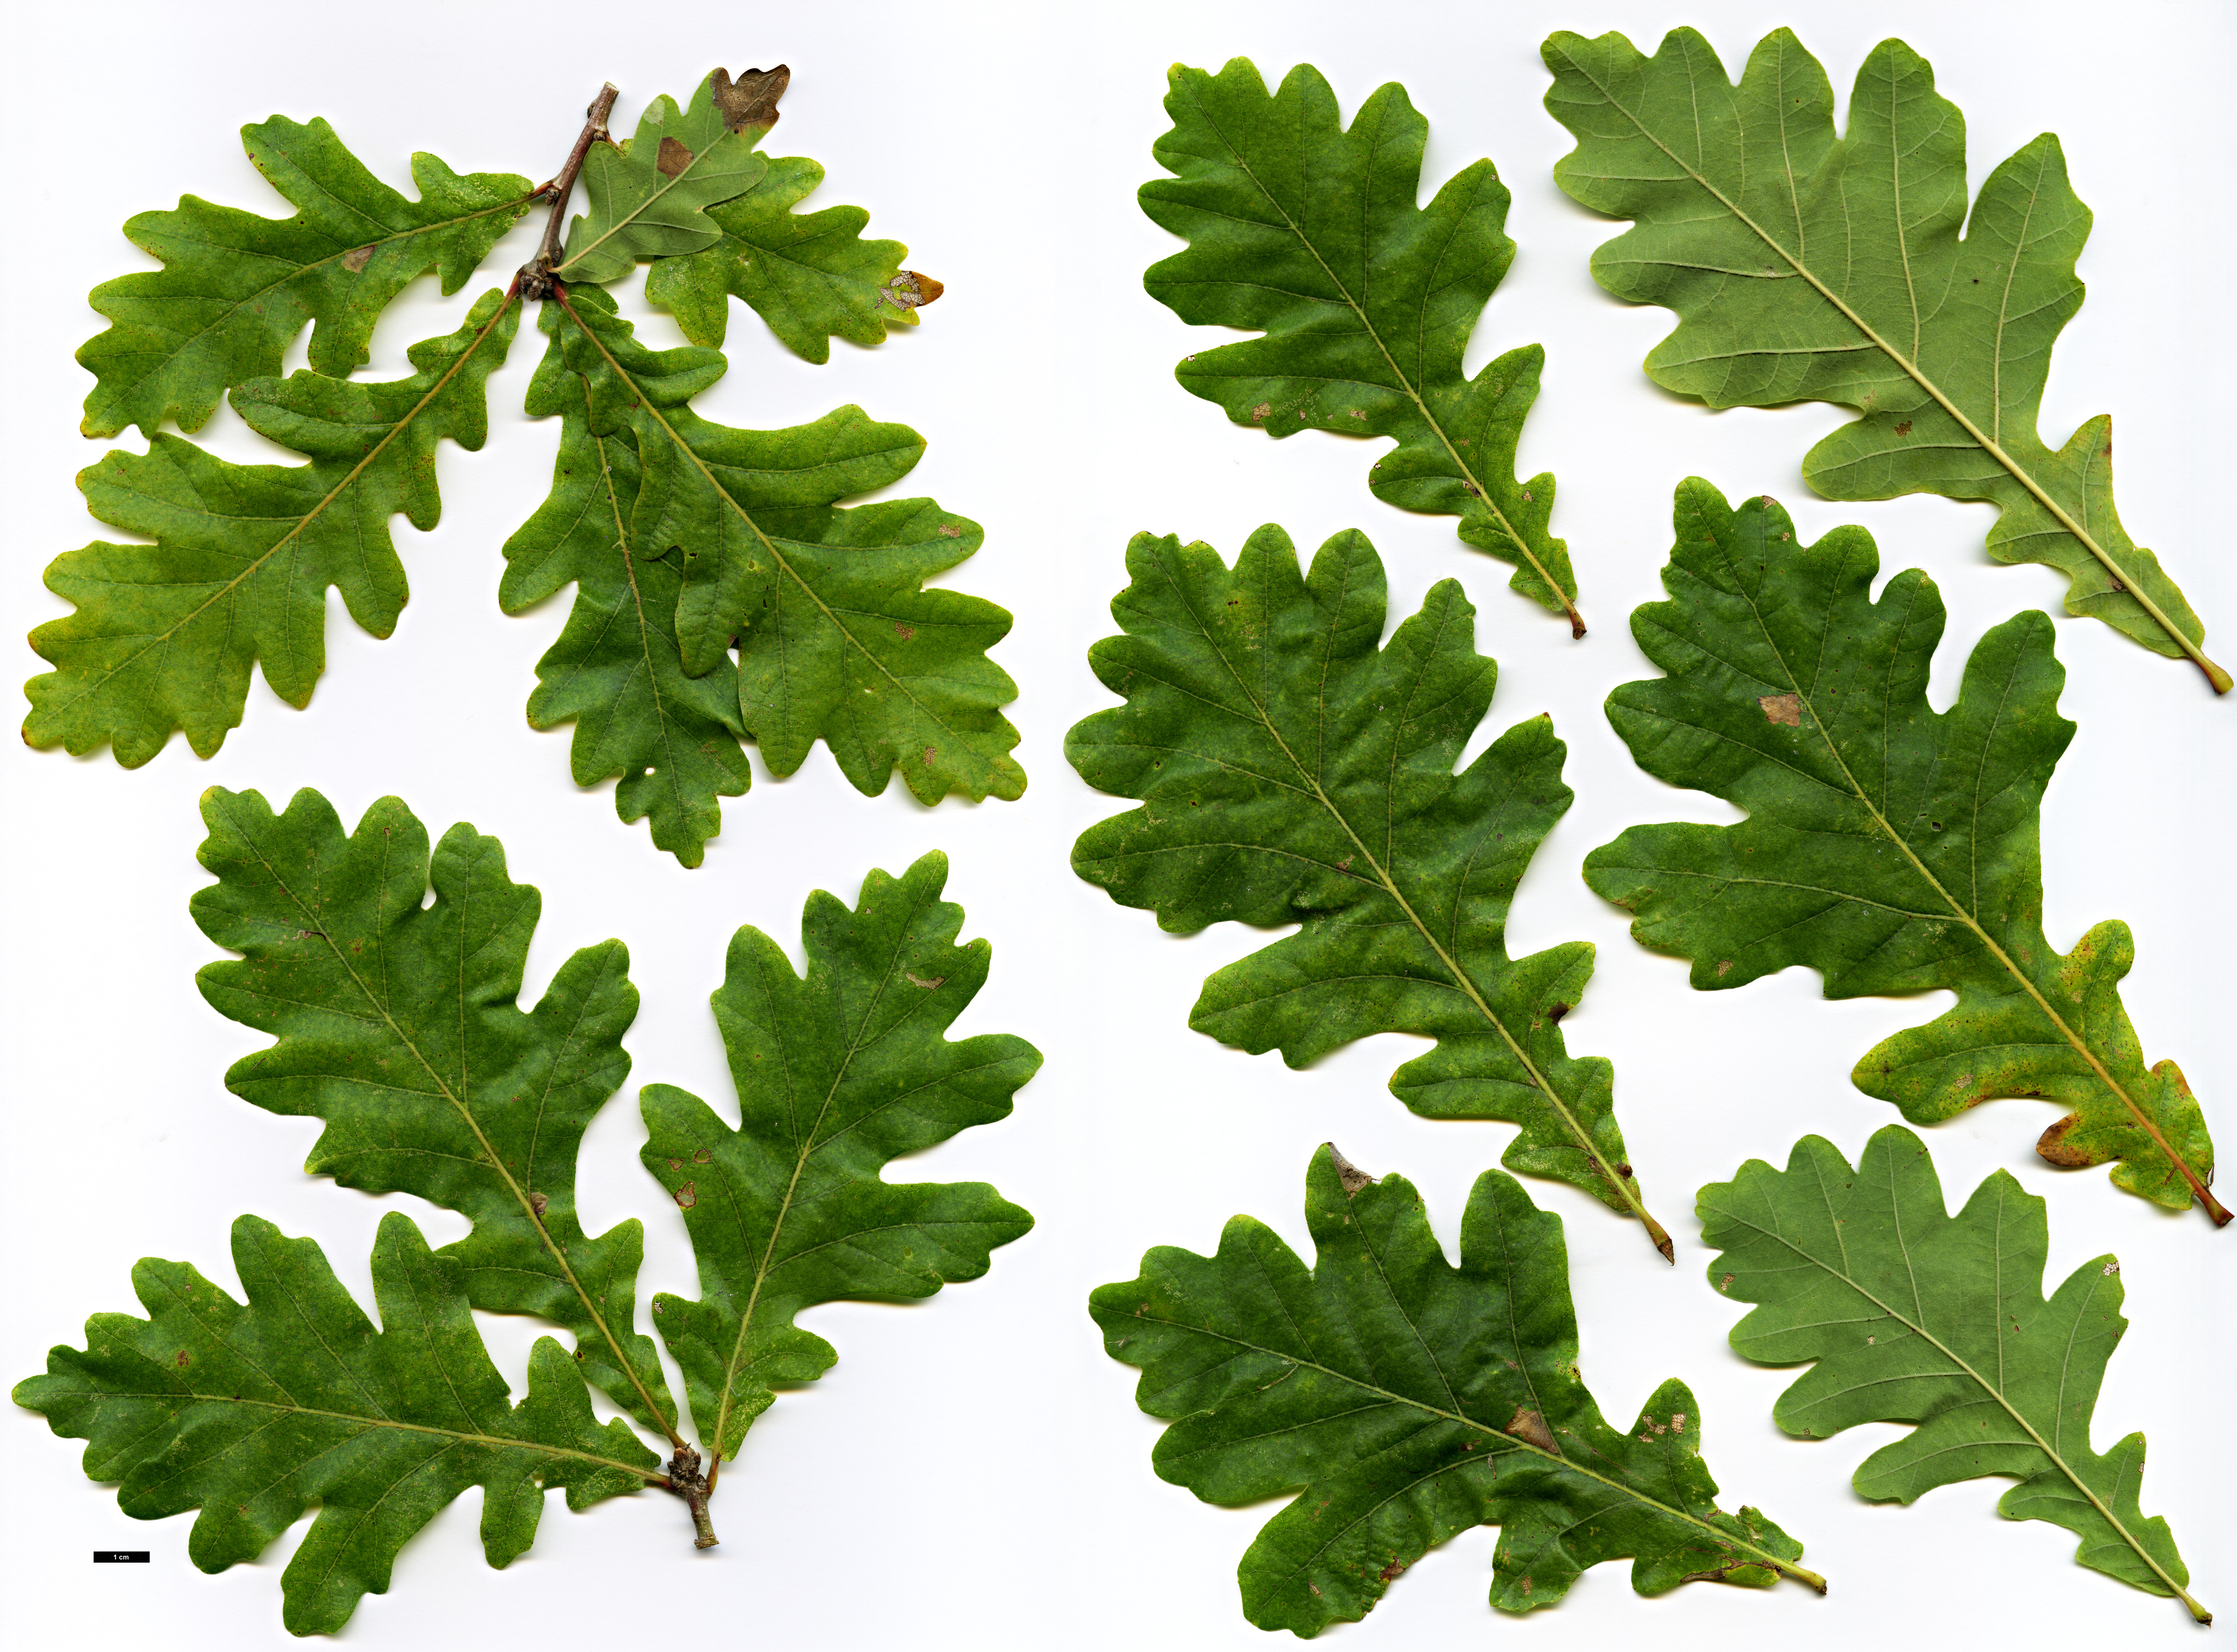 High resolution image: Family: Fagaceae - Genus: Quercus - Taxon: ×macdanielii (Q.macrocarpa × Q.robur)